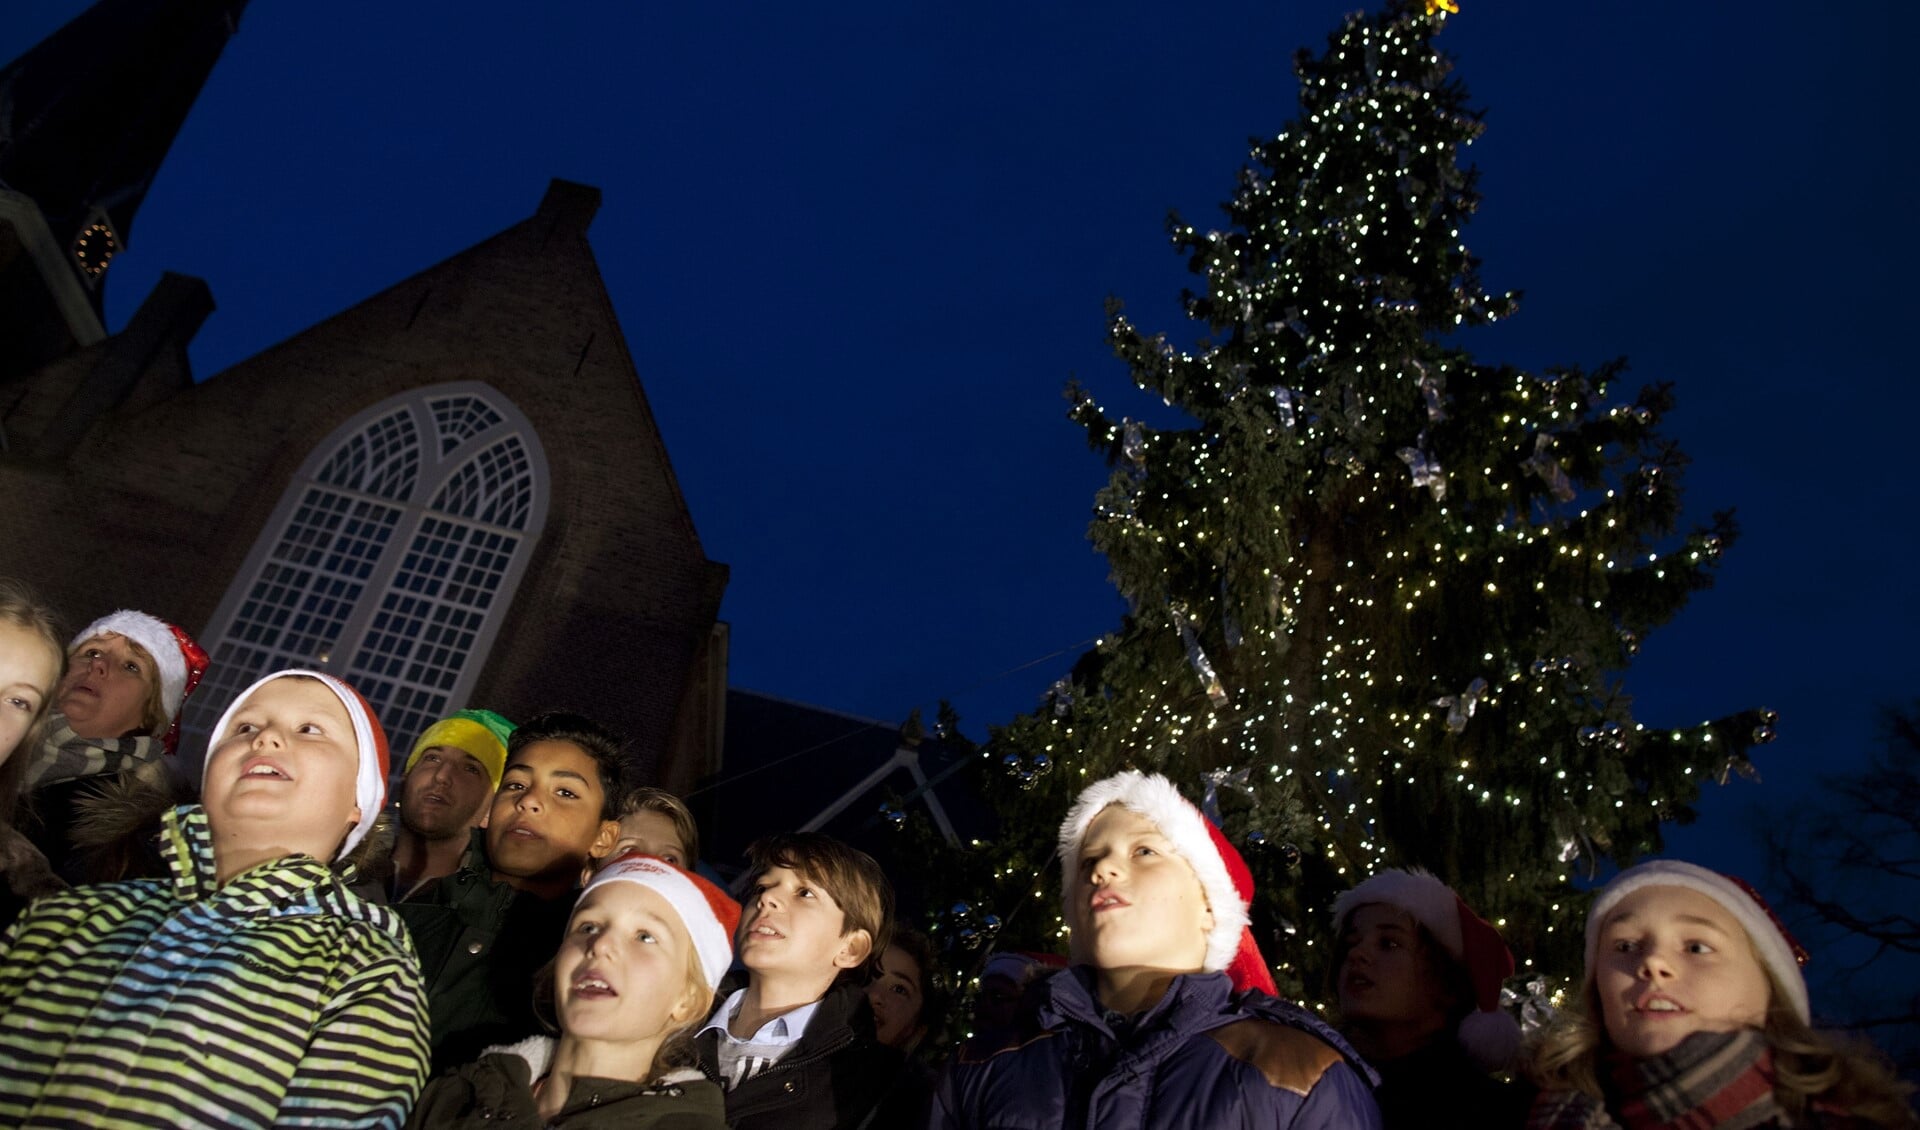 Ook in voorgaande jaren zongen leerlingen van de Lusthofschool kerstliedjes tijdens het ontsteken van de lichtjes. (Foto: Hilbert Krane)